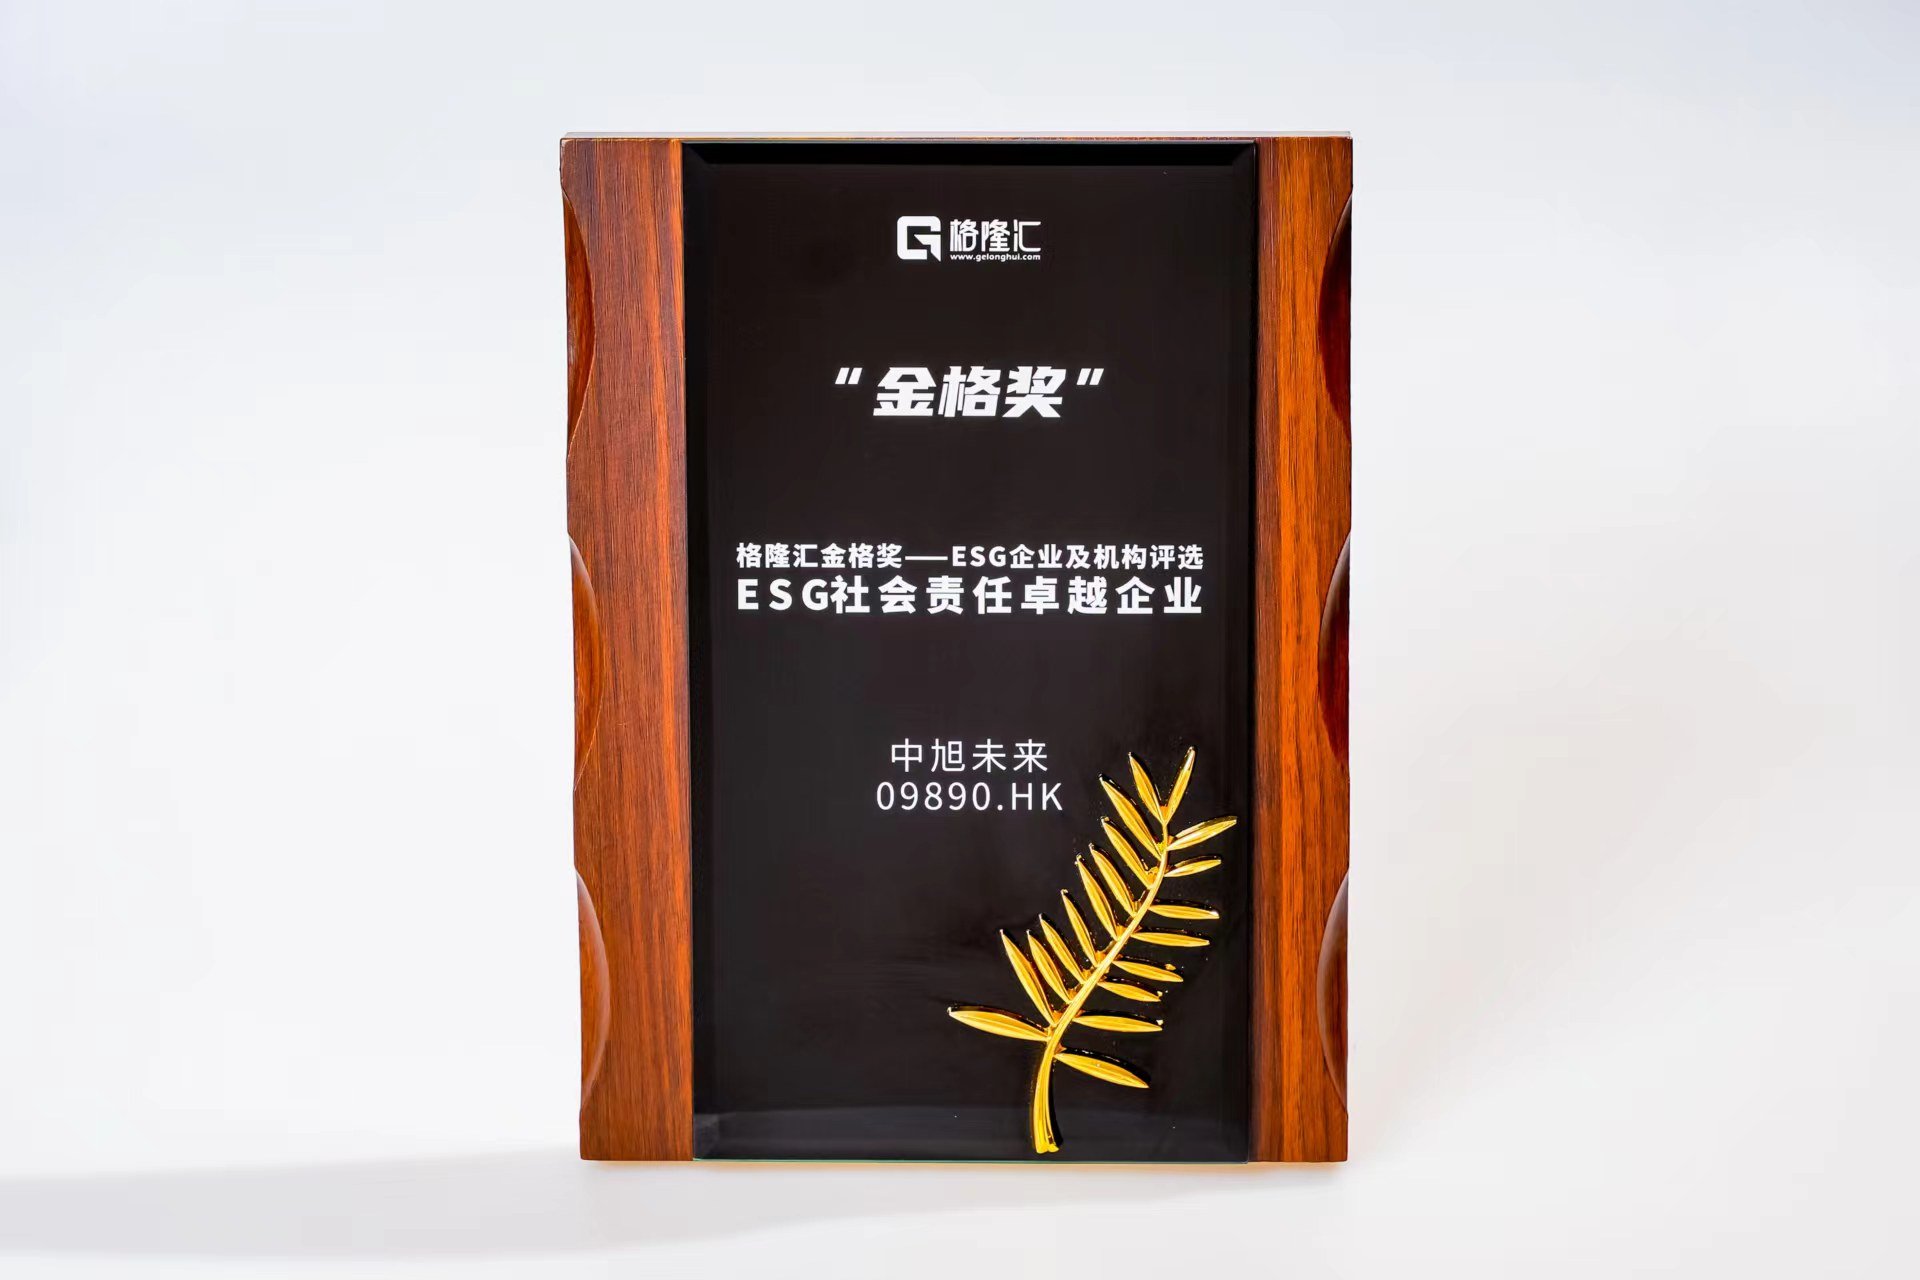 中旭未来(9890.HK)荣获格隆汇金格奖·ESG社会责任卓越企业